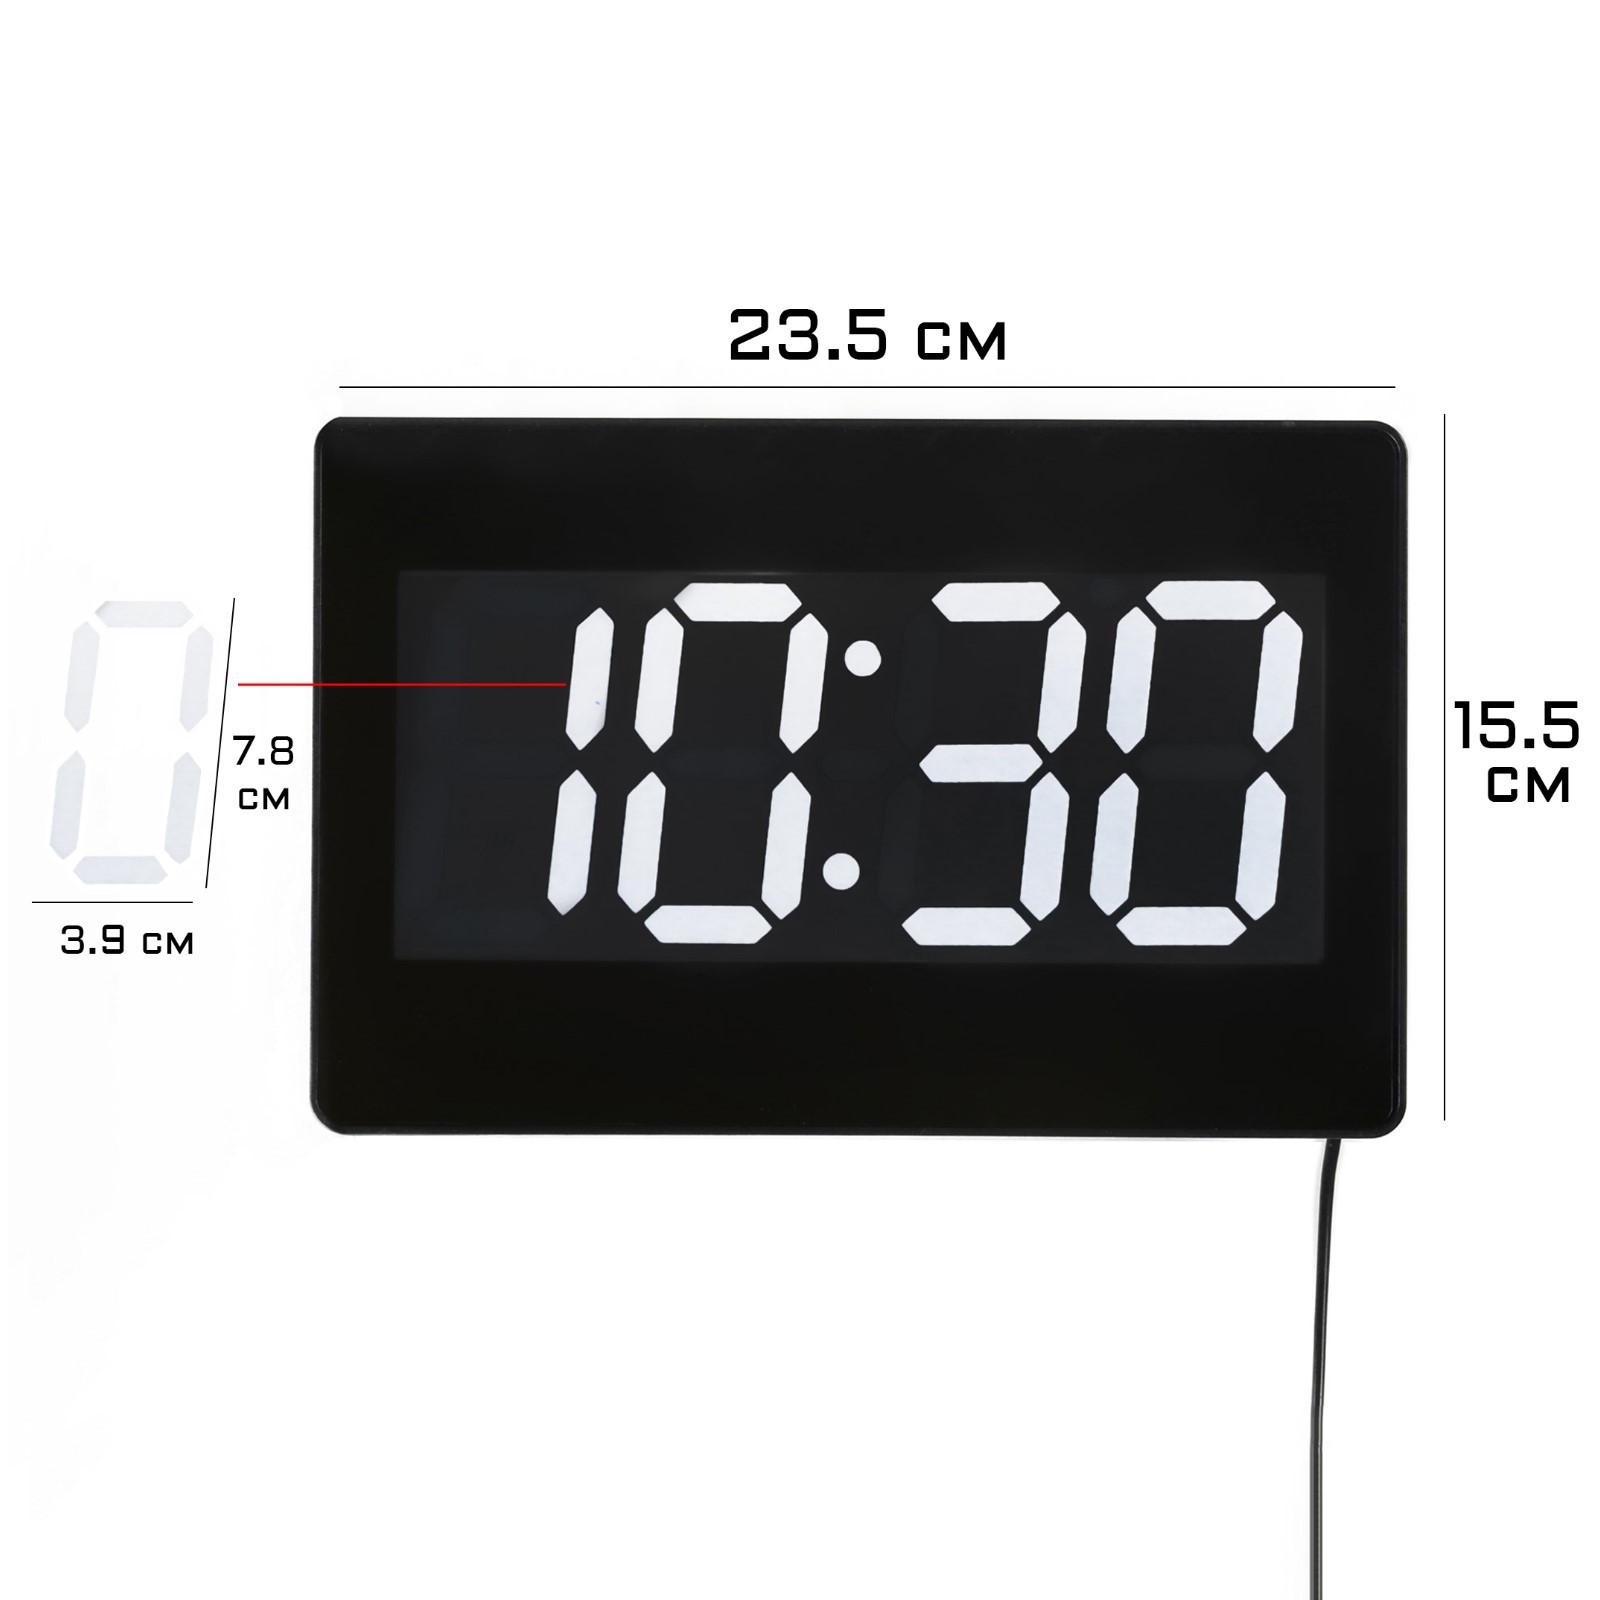 Часы настенные, купить электронные настенные часы по доступной цене в Киеве, Украине - HozDom